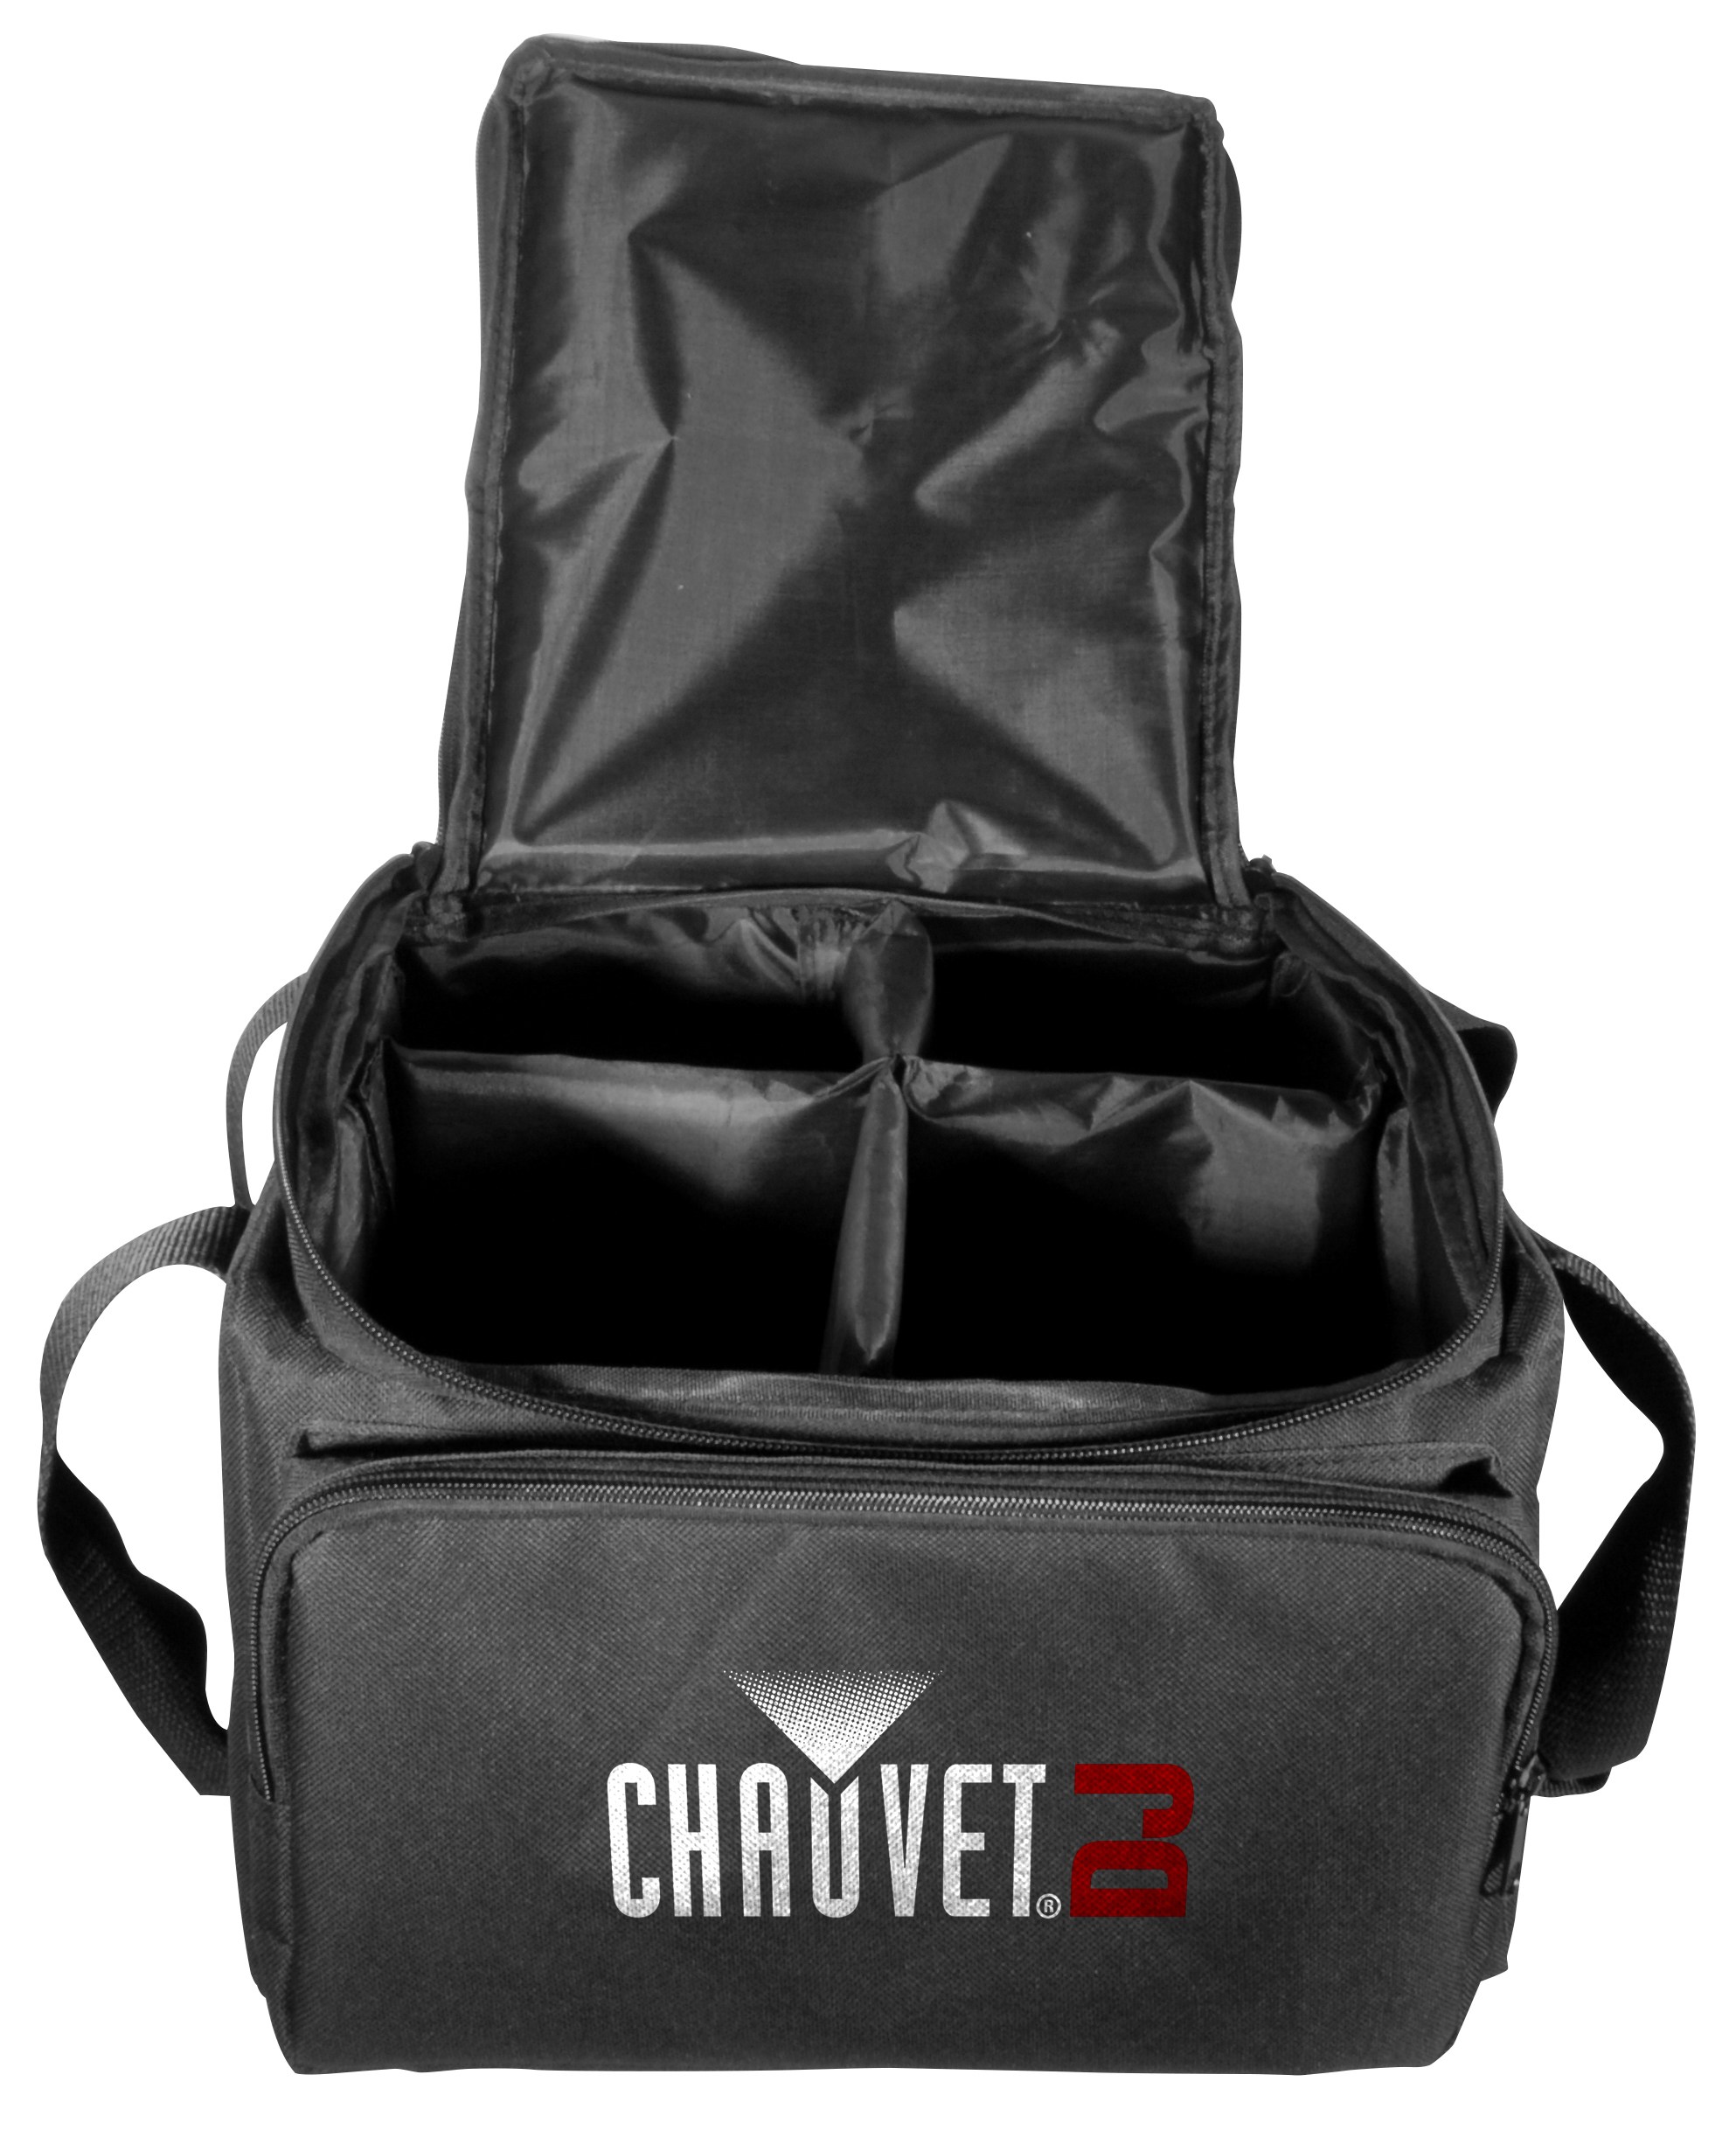 Chauvet CHS-FR4 VIP Gear Bag